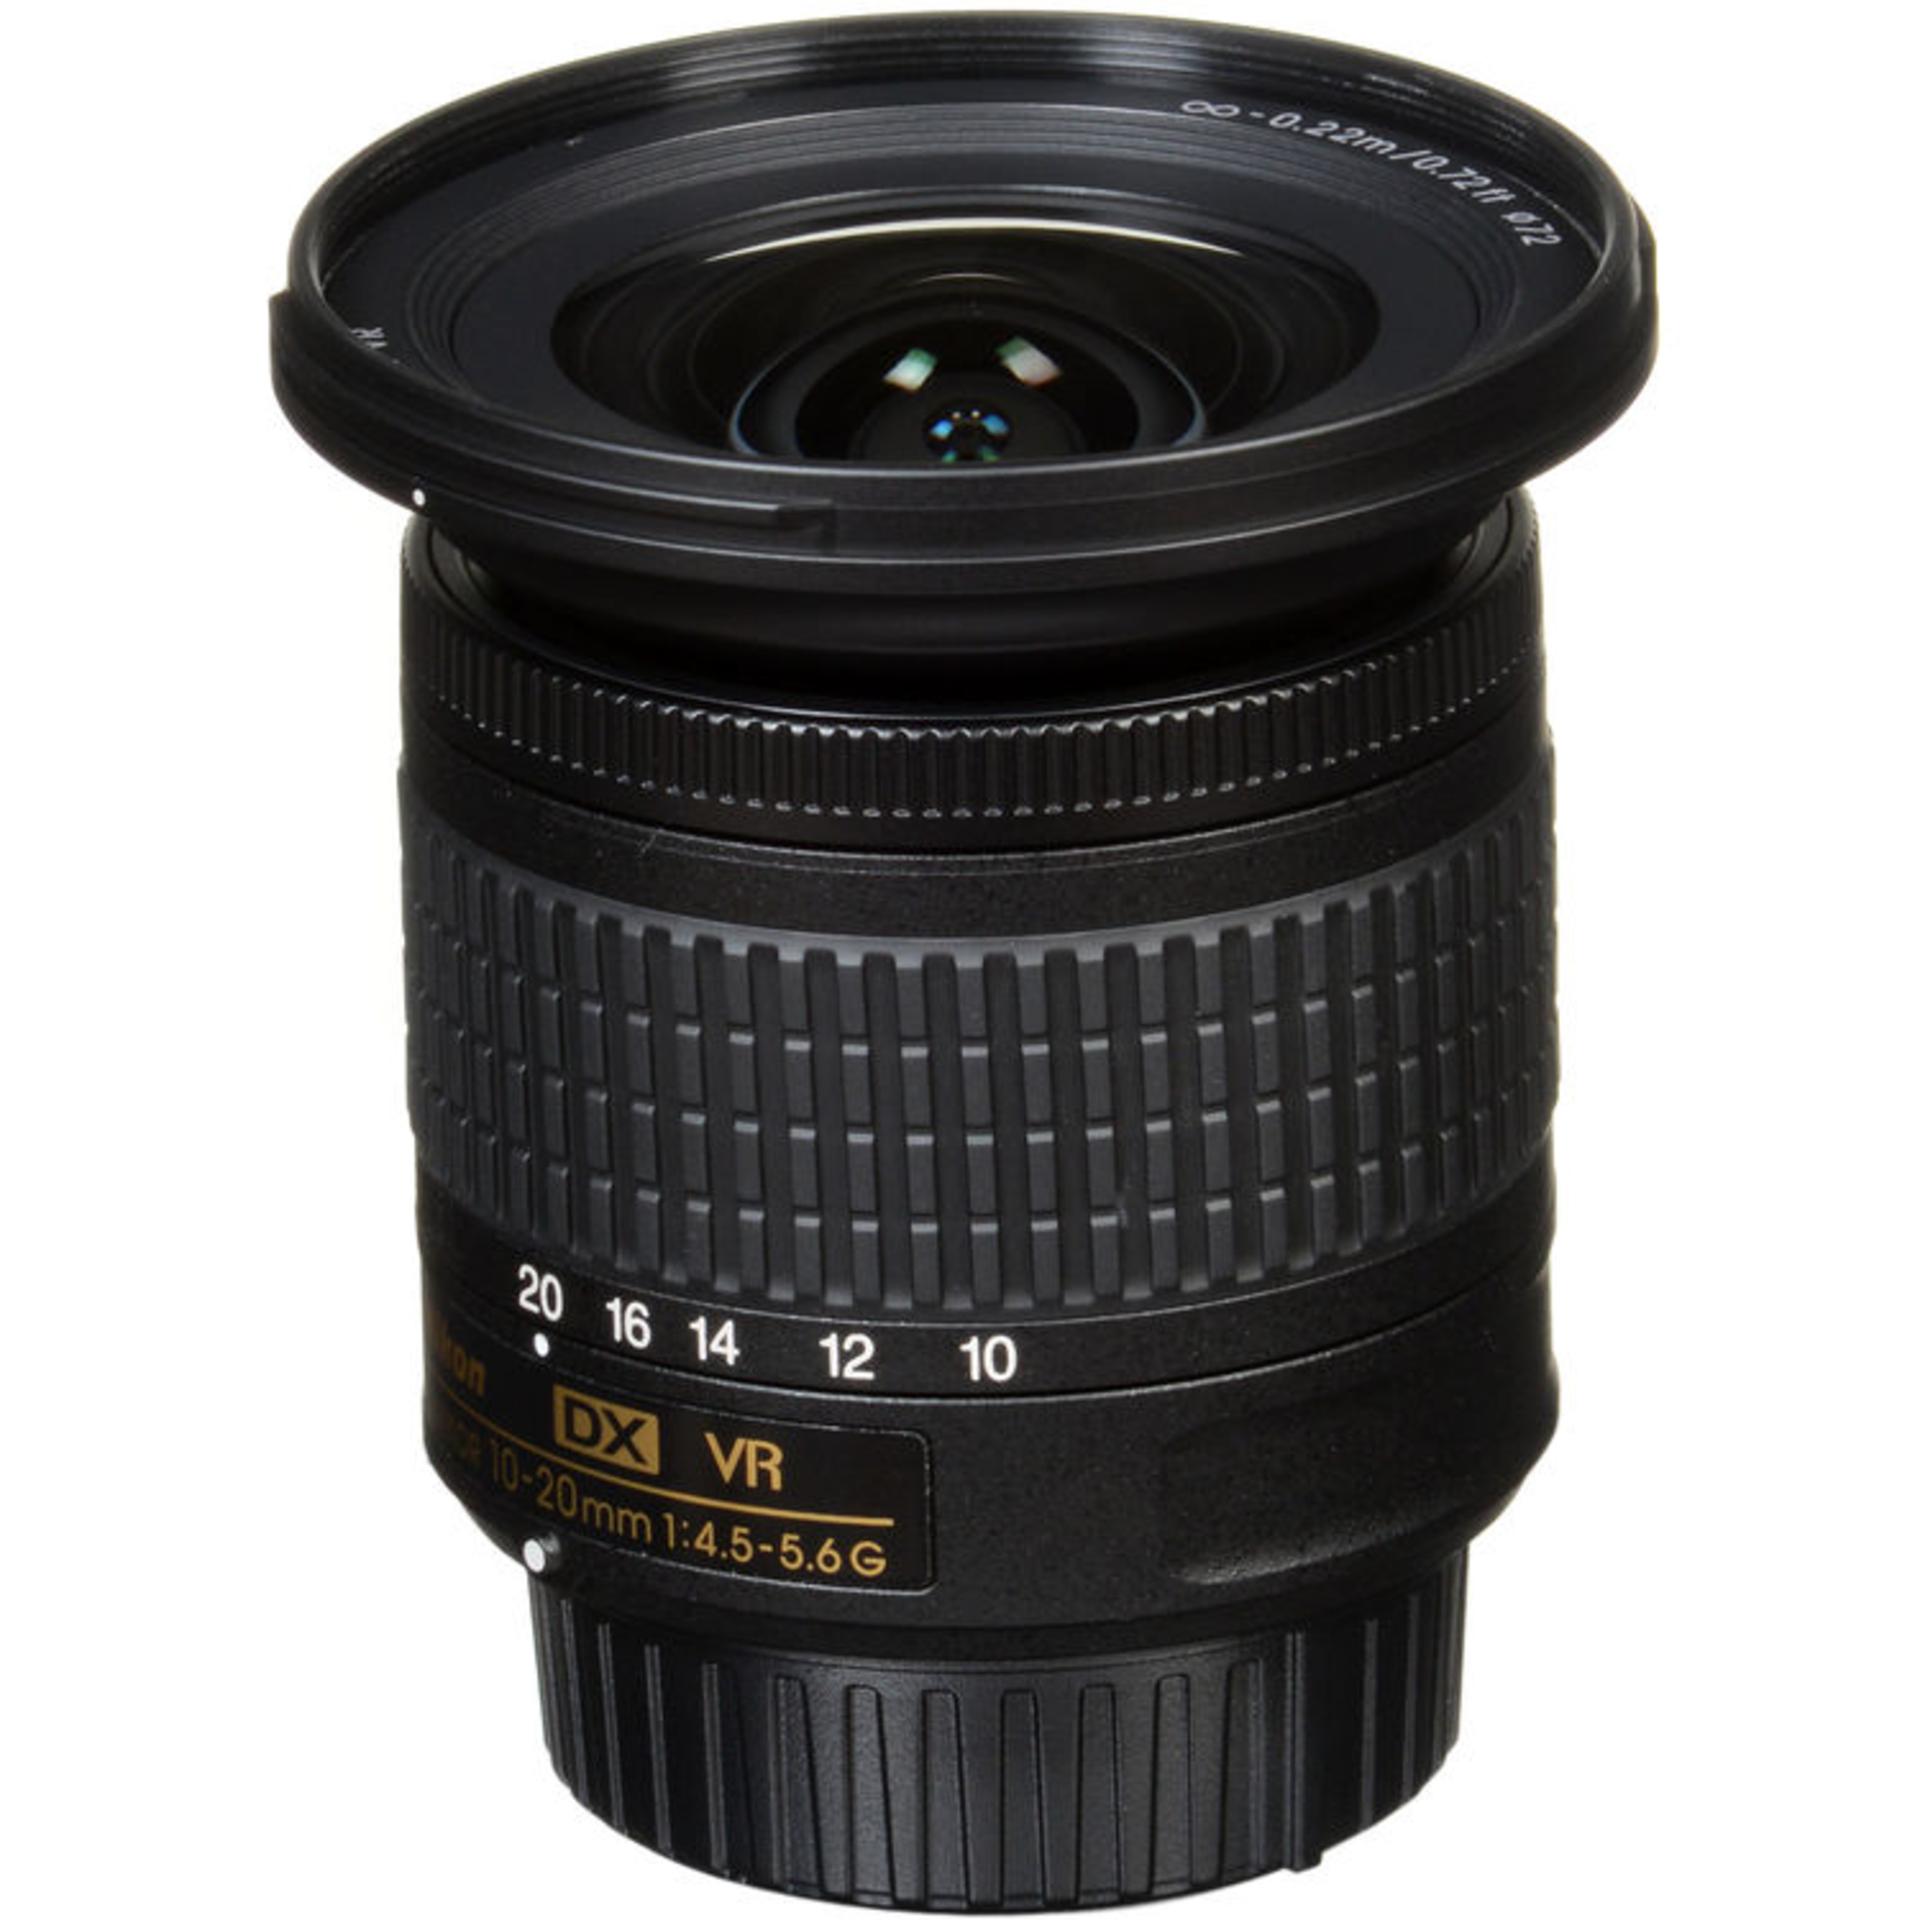 Nikon AF-P DX Nikkor 10-20mm F4.5-5.6G VR	